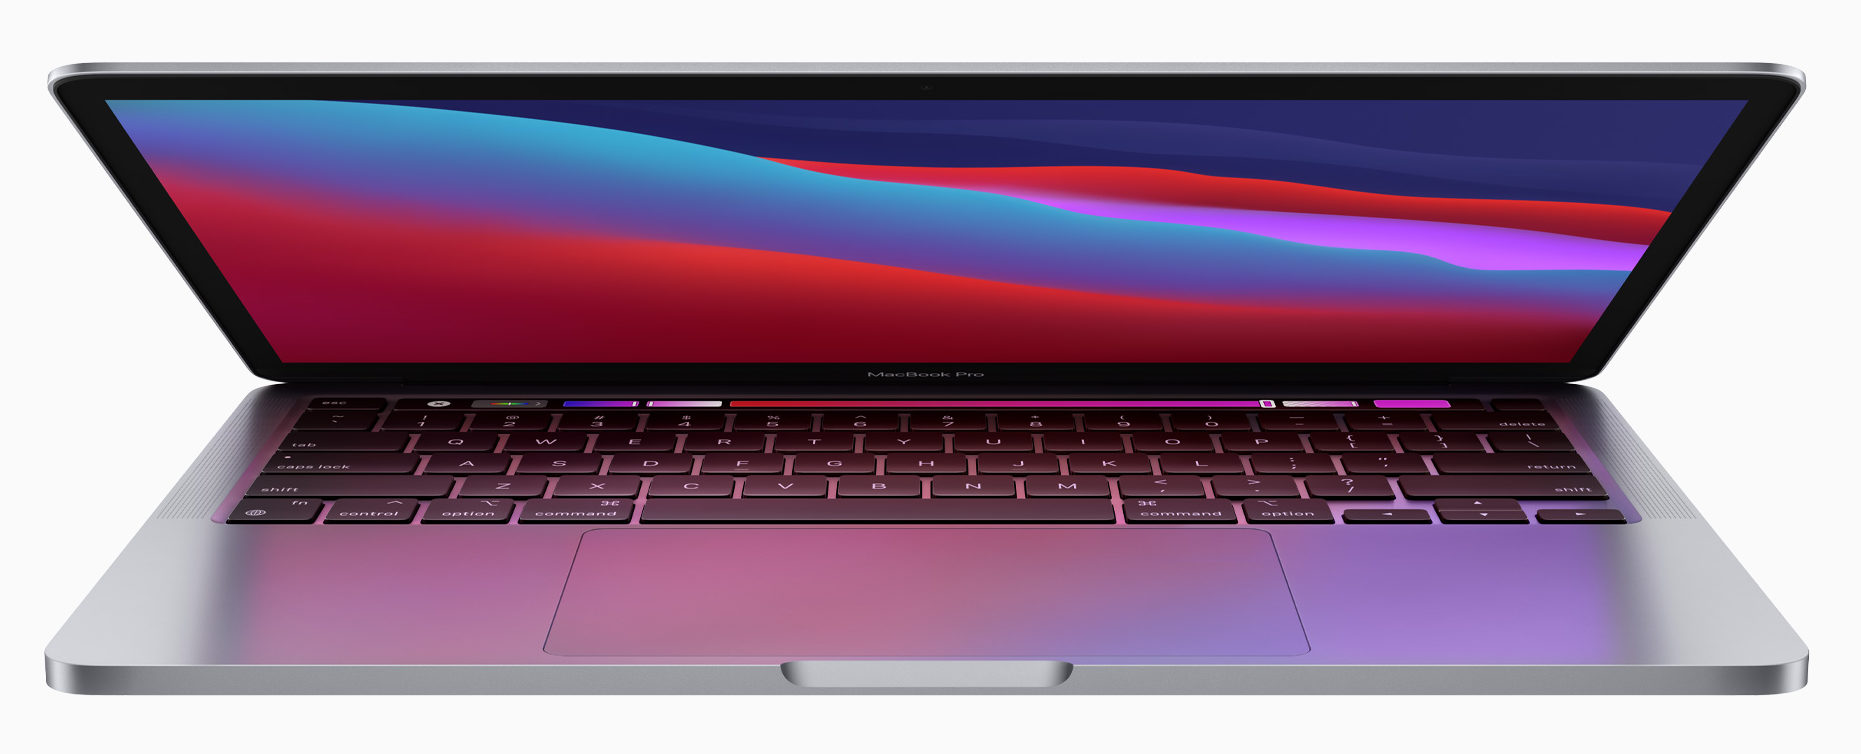 Apple MacBook Pro de 13,3 pulgadas -imagen oficial de Apple